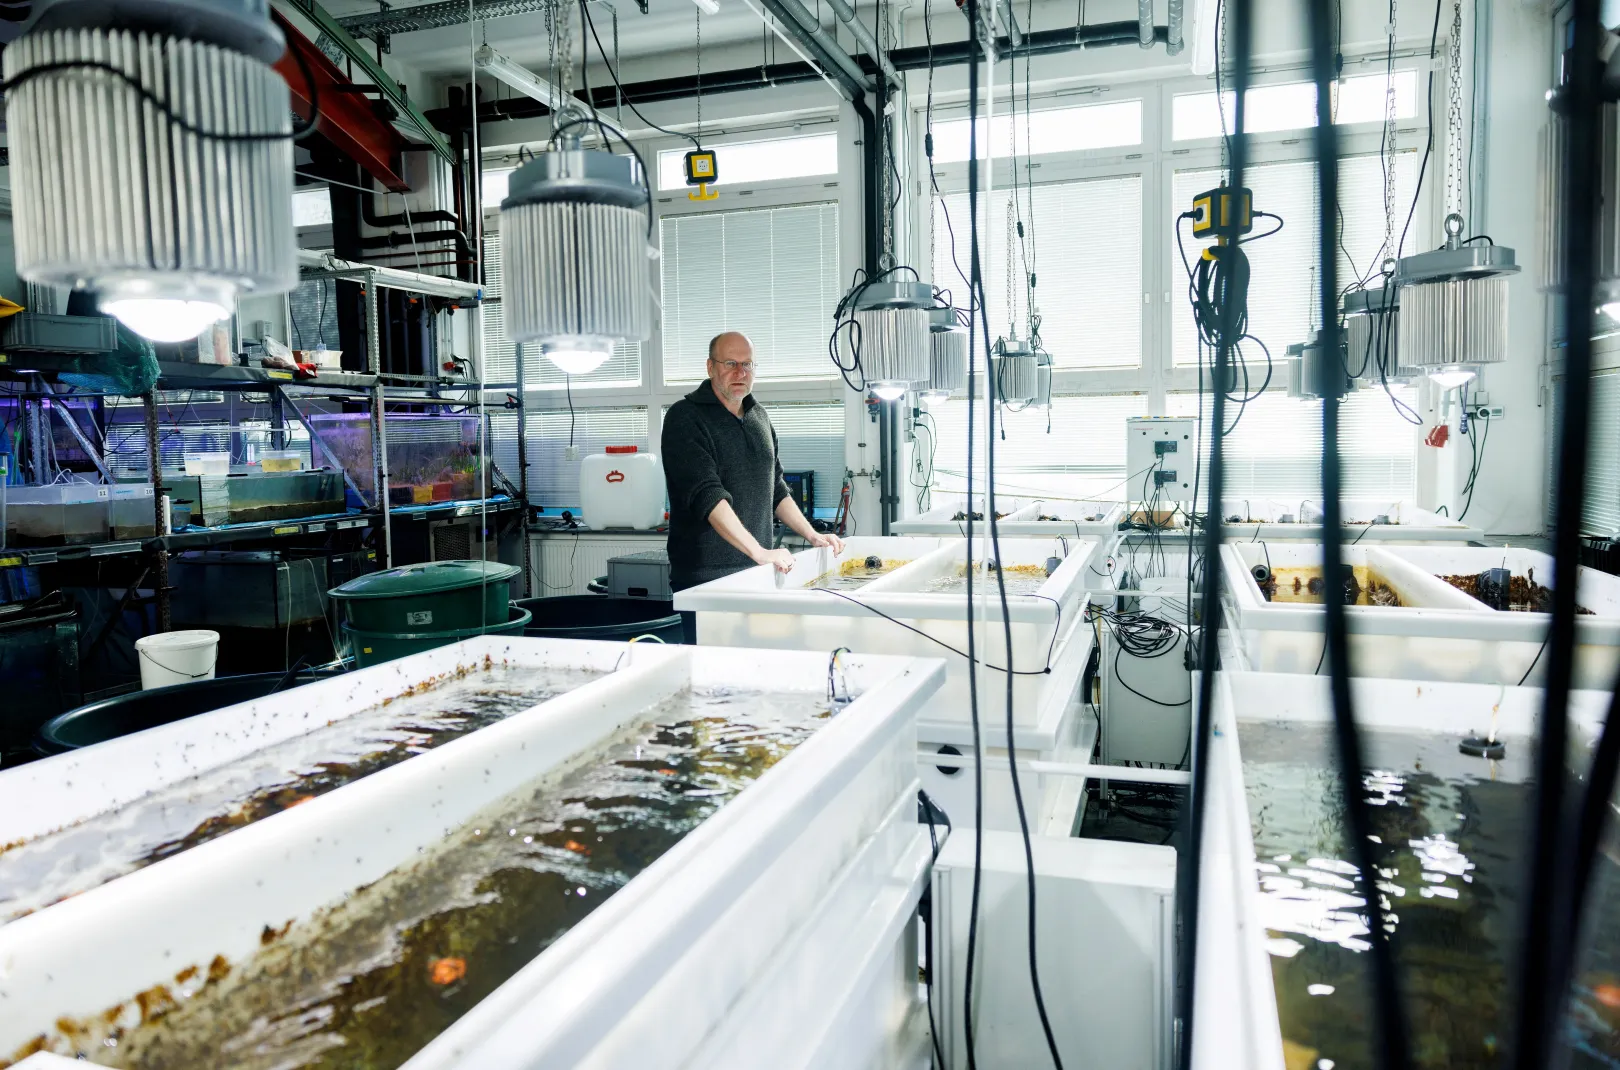 Thorsten Reusch, a GEOMAR tudósa az intézet laborjában a tengerifűvel teli tartályok mellett – Fotó: Lisi Niesner / Reuters